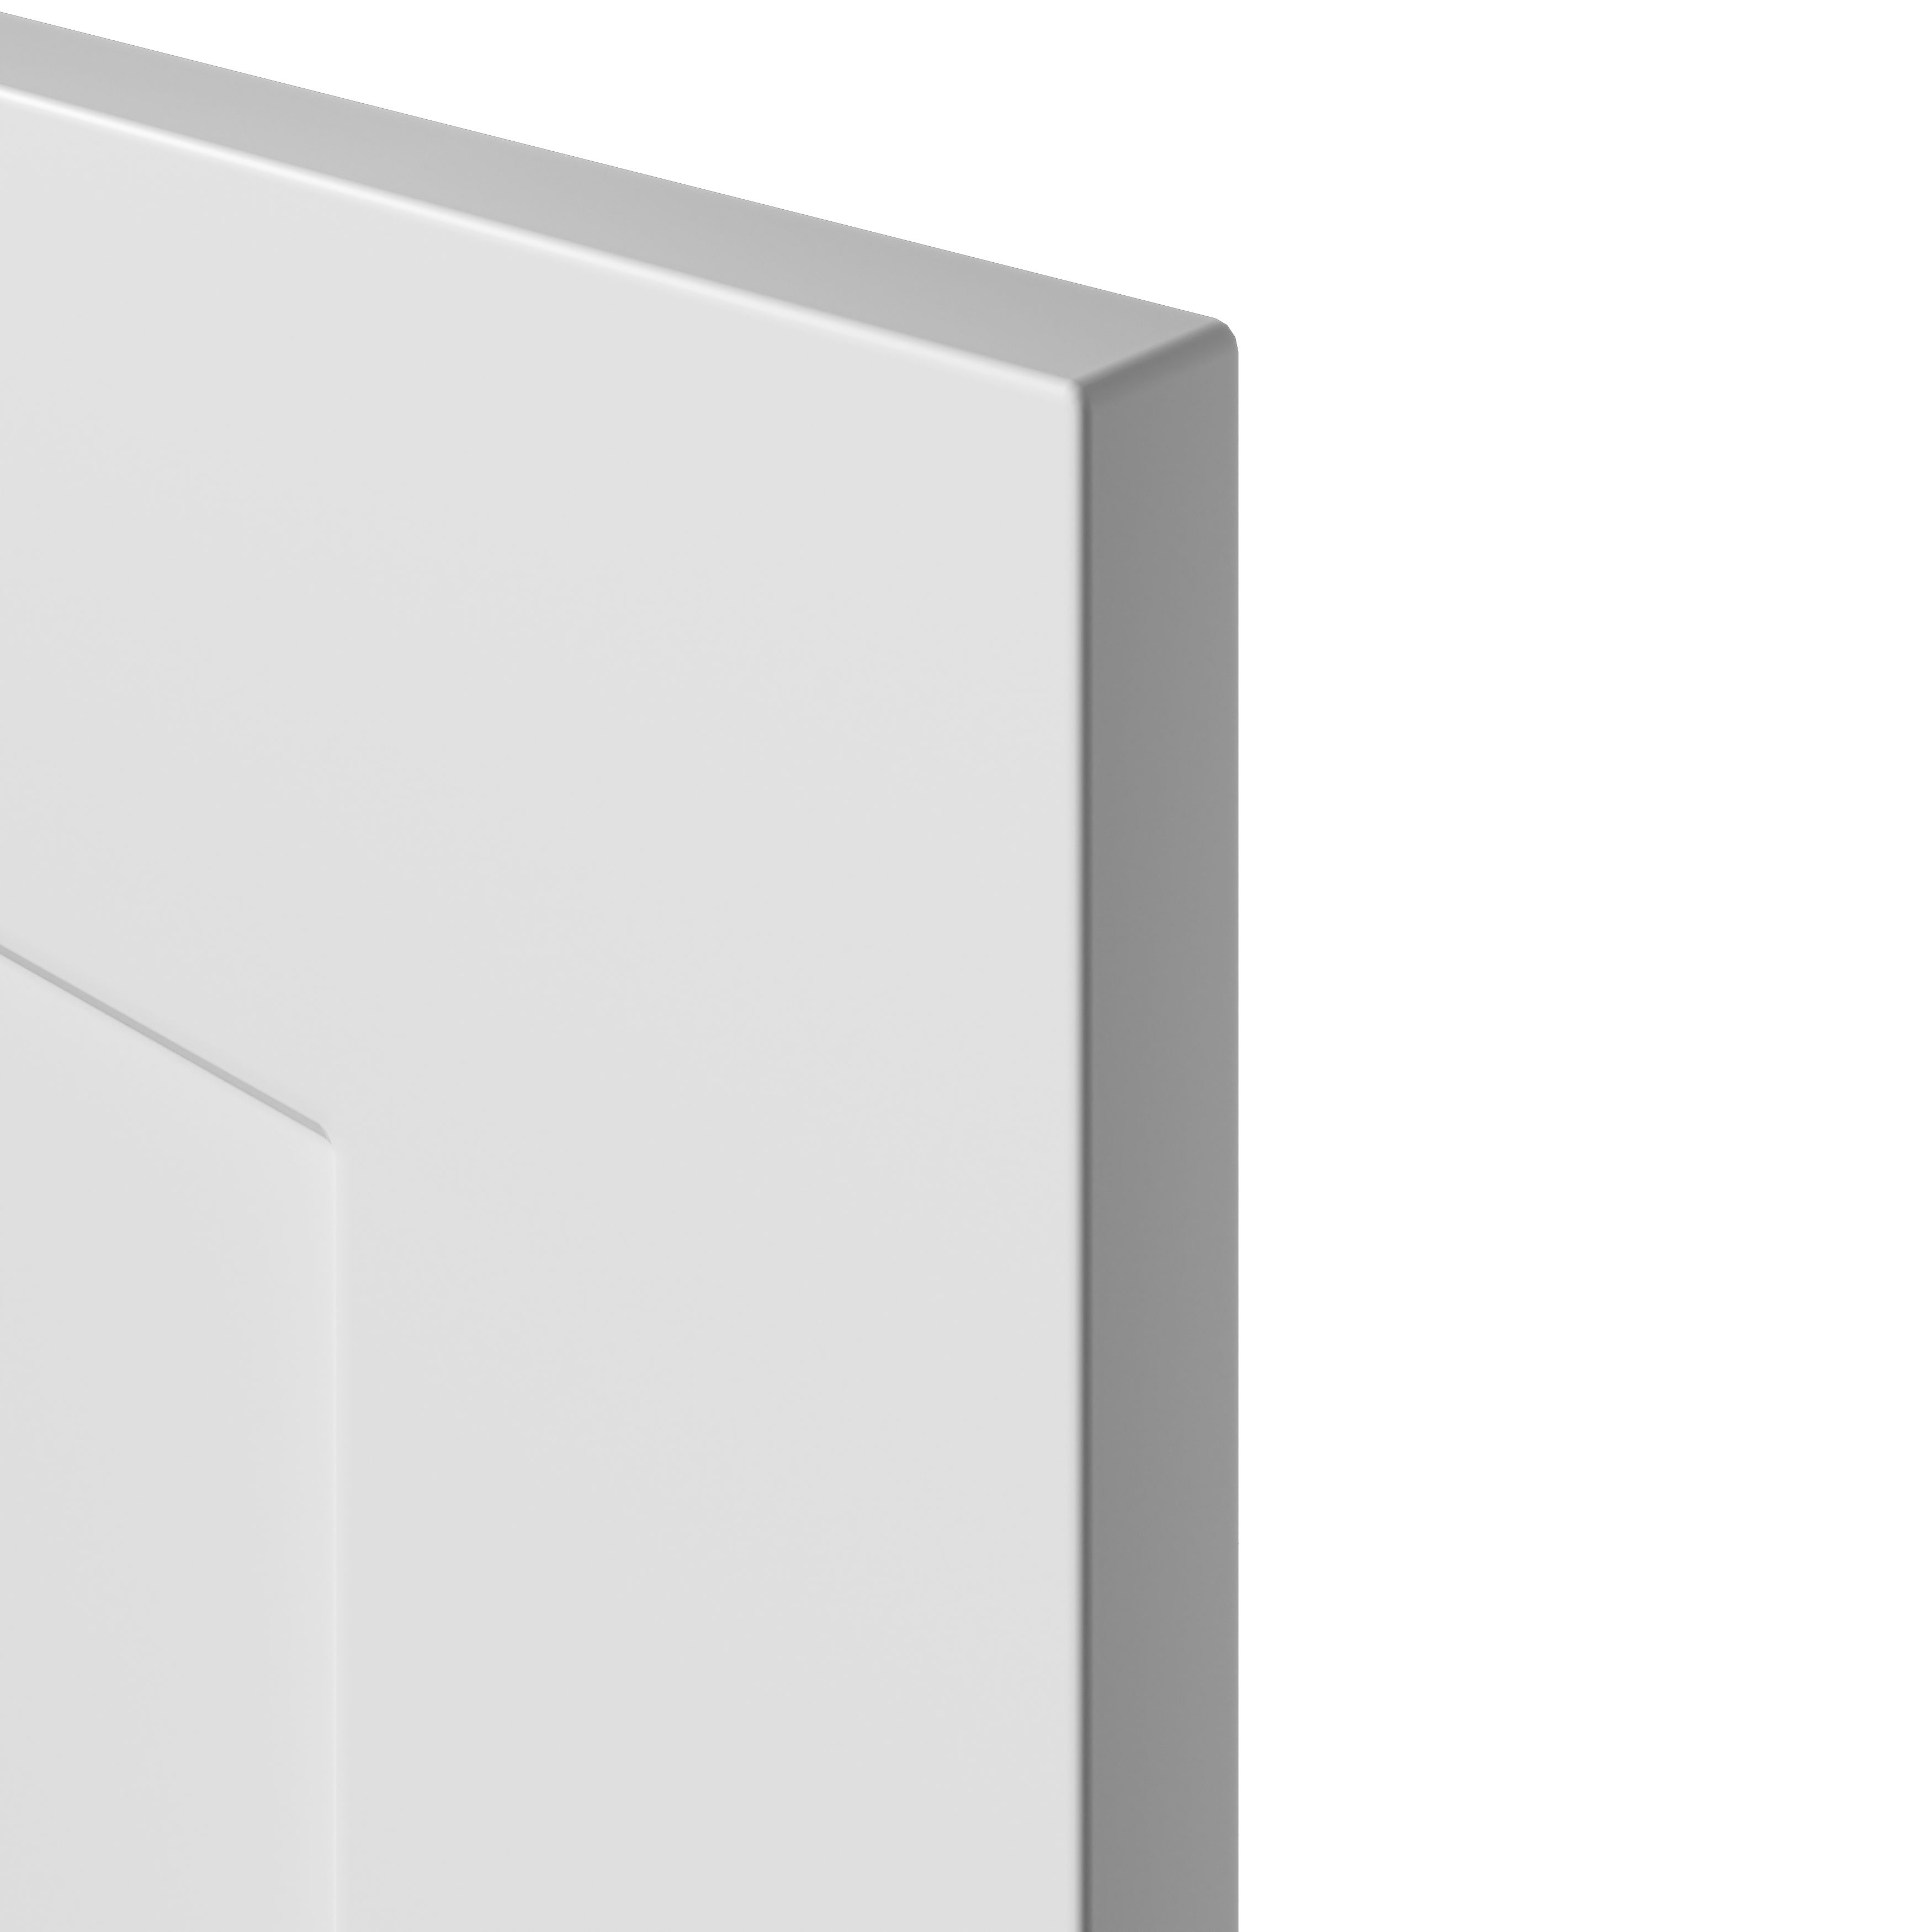 GoodHome Artemisia Matt white Drawer front, bridging door & bi fold door, (W)500mm (H)340mm (T)18mm